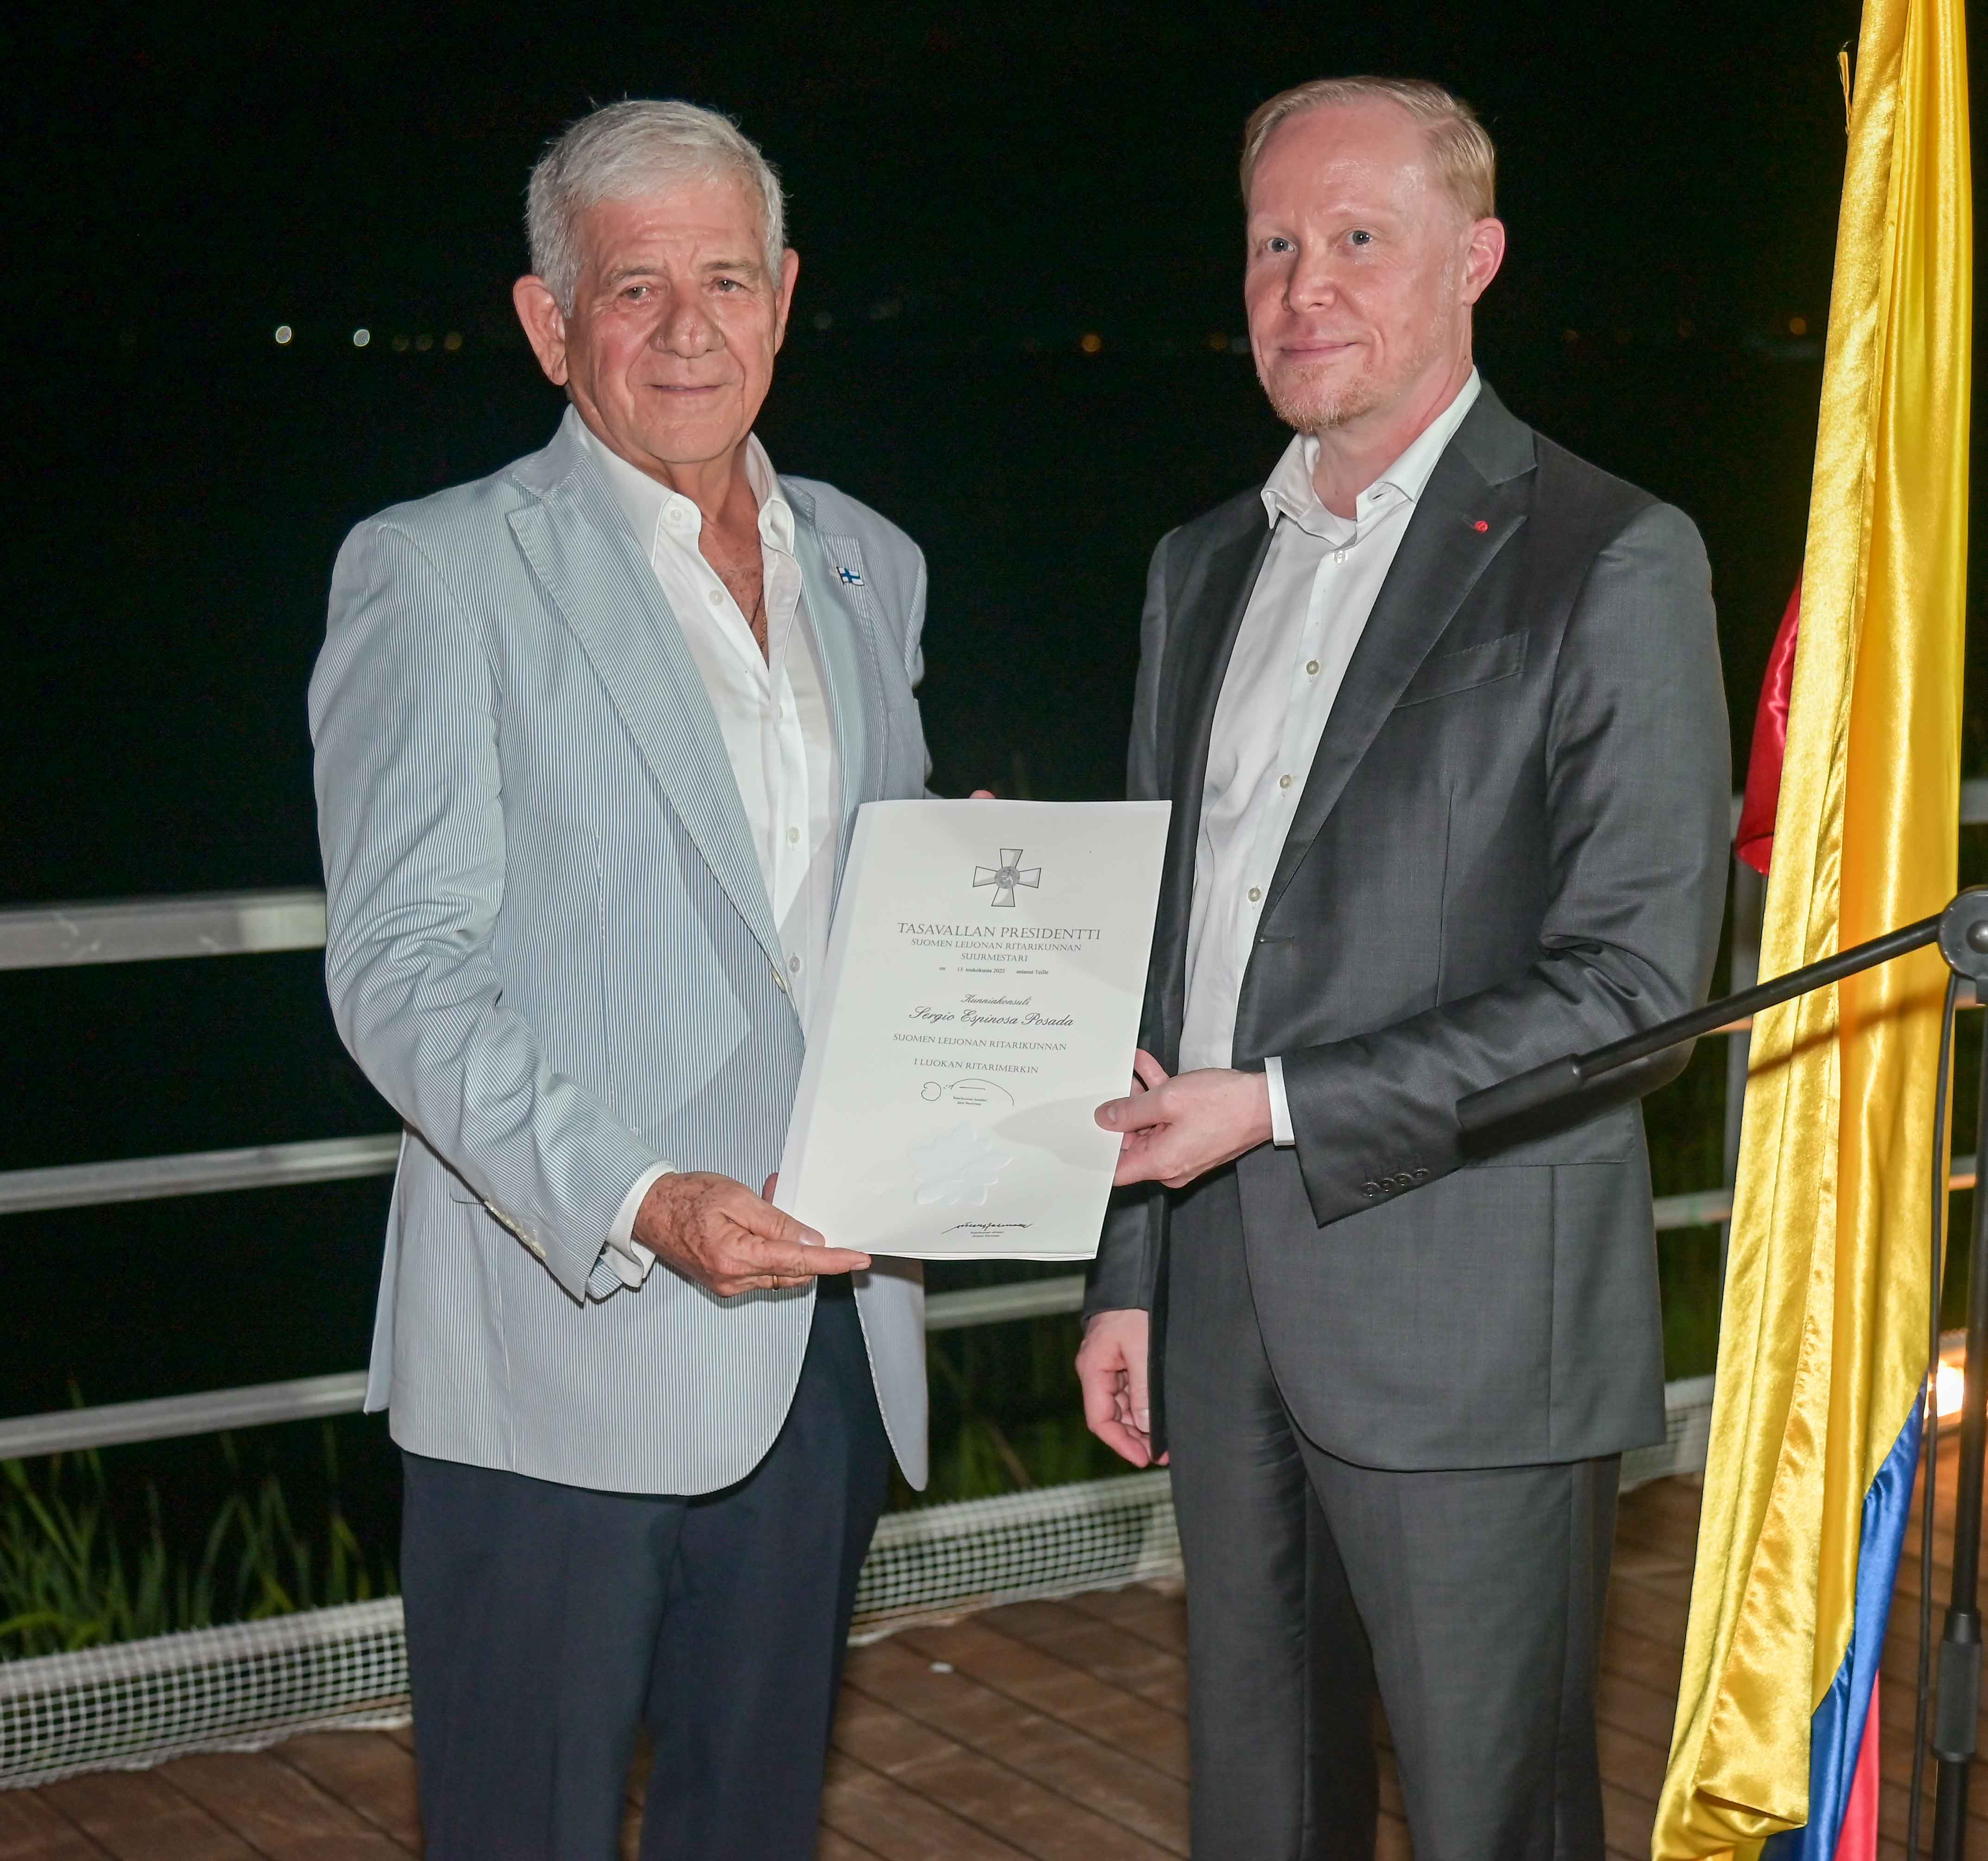 En la izquierda el Cónsul Honorario Sergio Espinosa Posada y a la derecha el Embajador Antti Kaski